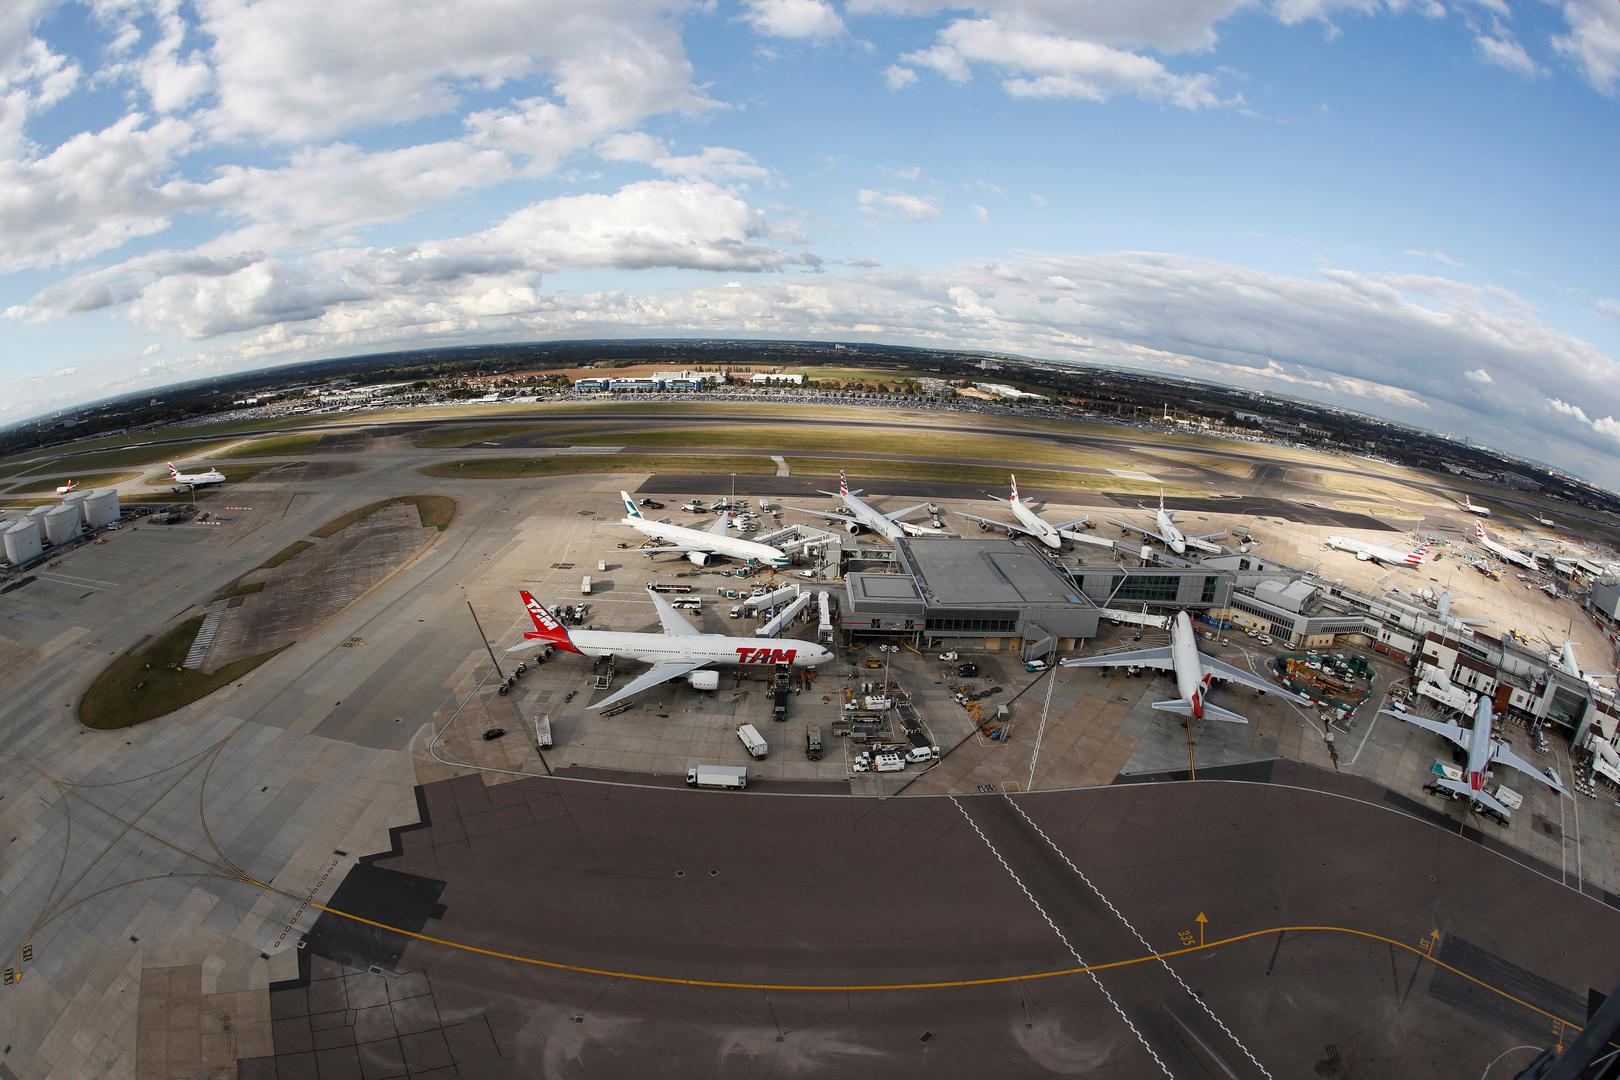 Britanski zastupnici su u ponedjeljak navečer odobrili izgradnju treće uzletno-sletne staze u londonskoj zračnoj luci Heathrowu, najvećoj u Europi po broju putnika, nakon žustre rasprave koja bi mogla dobiti sudski epilog.